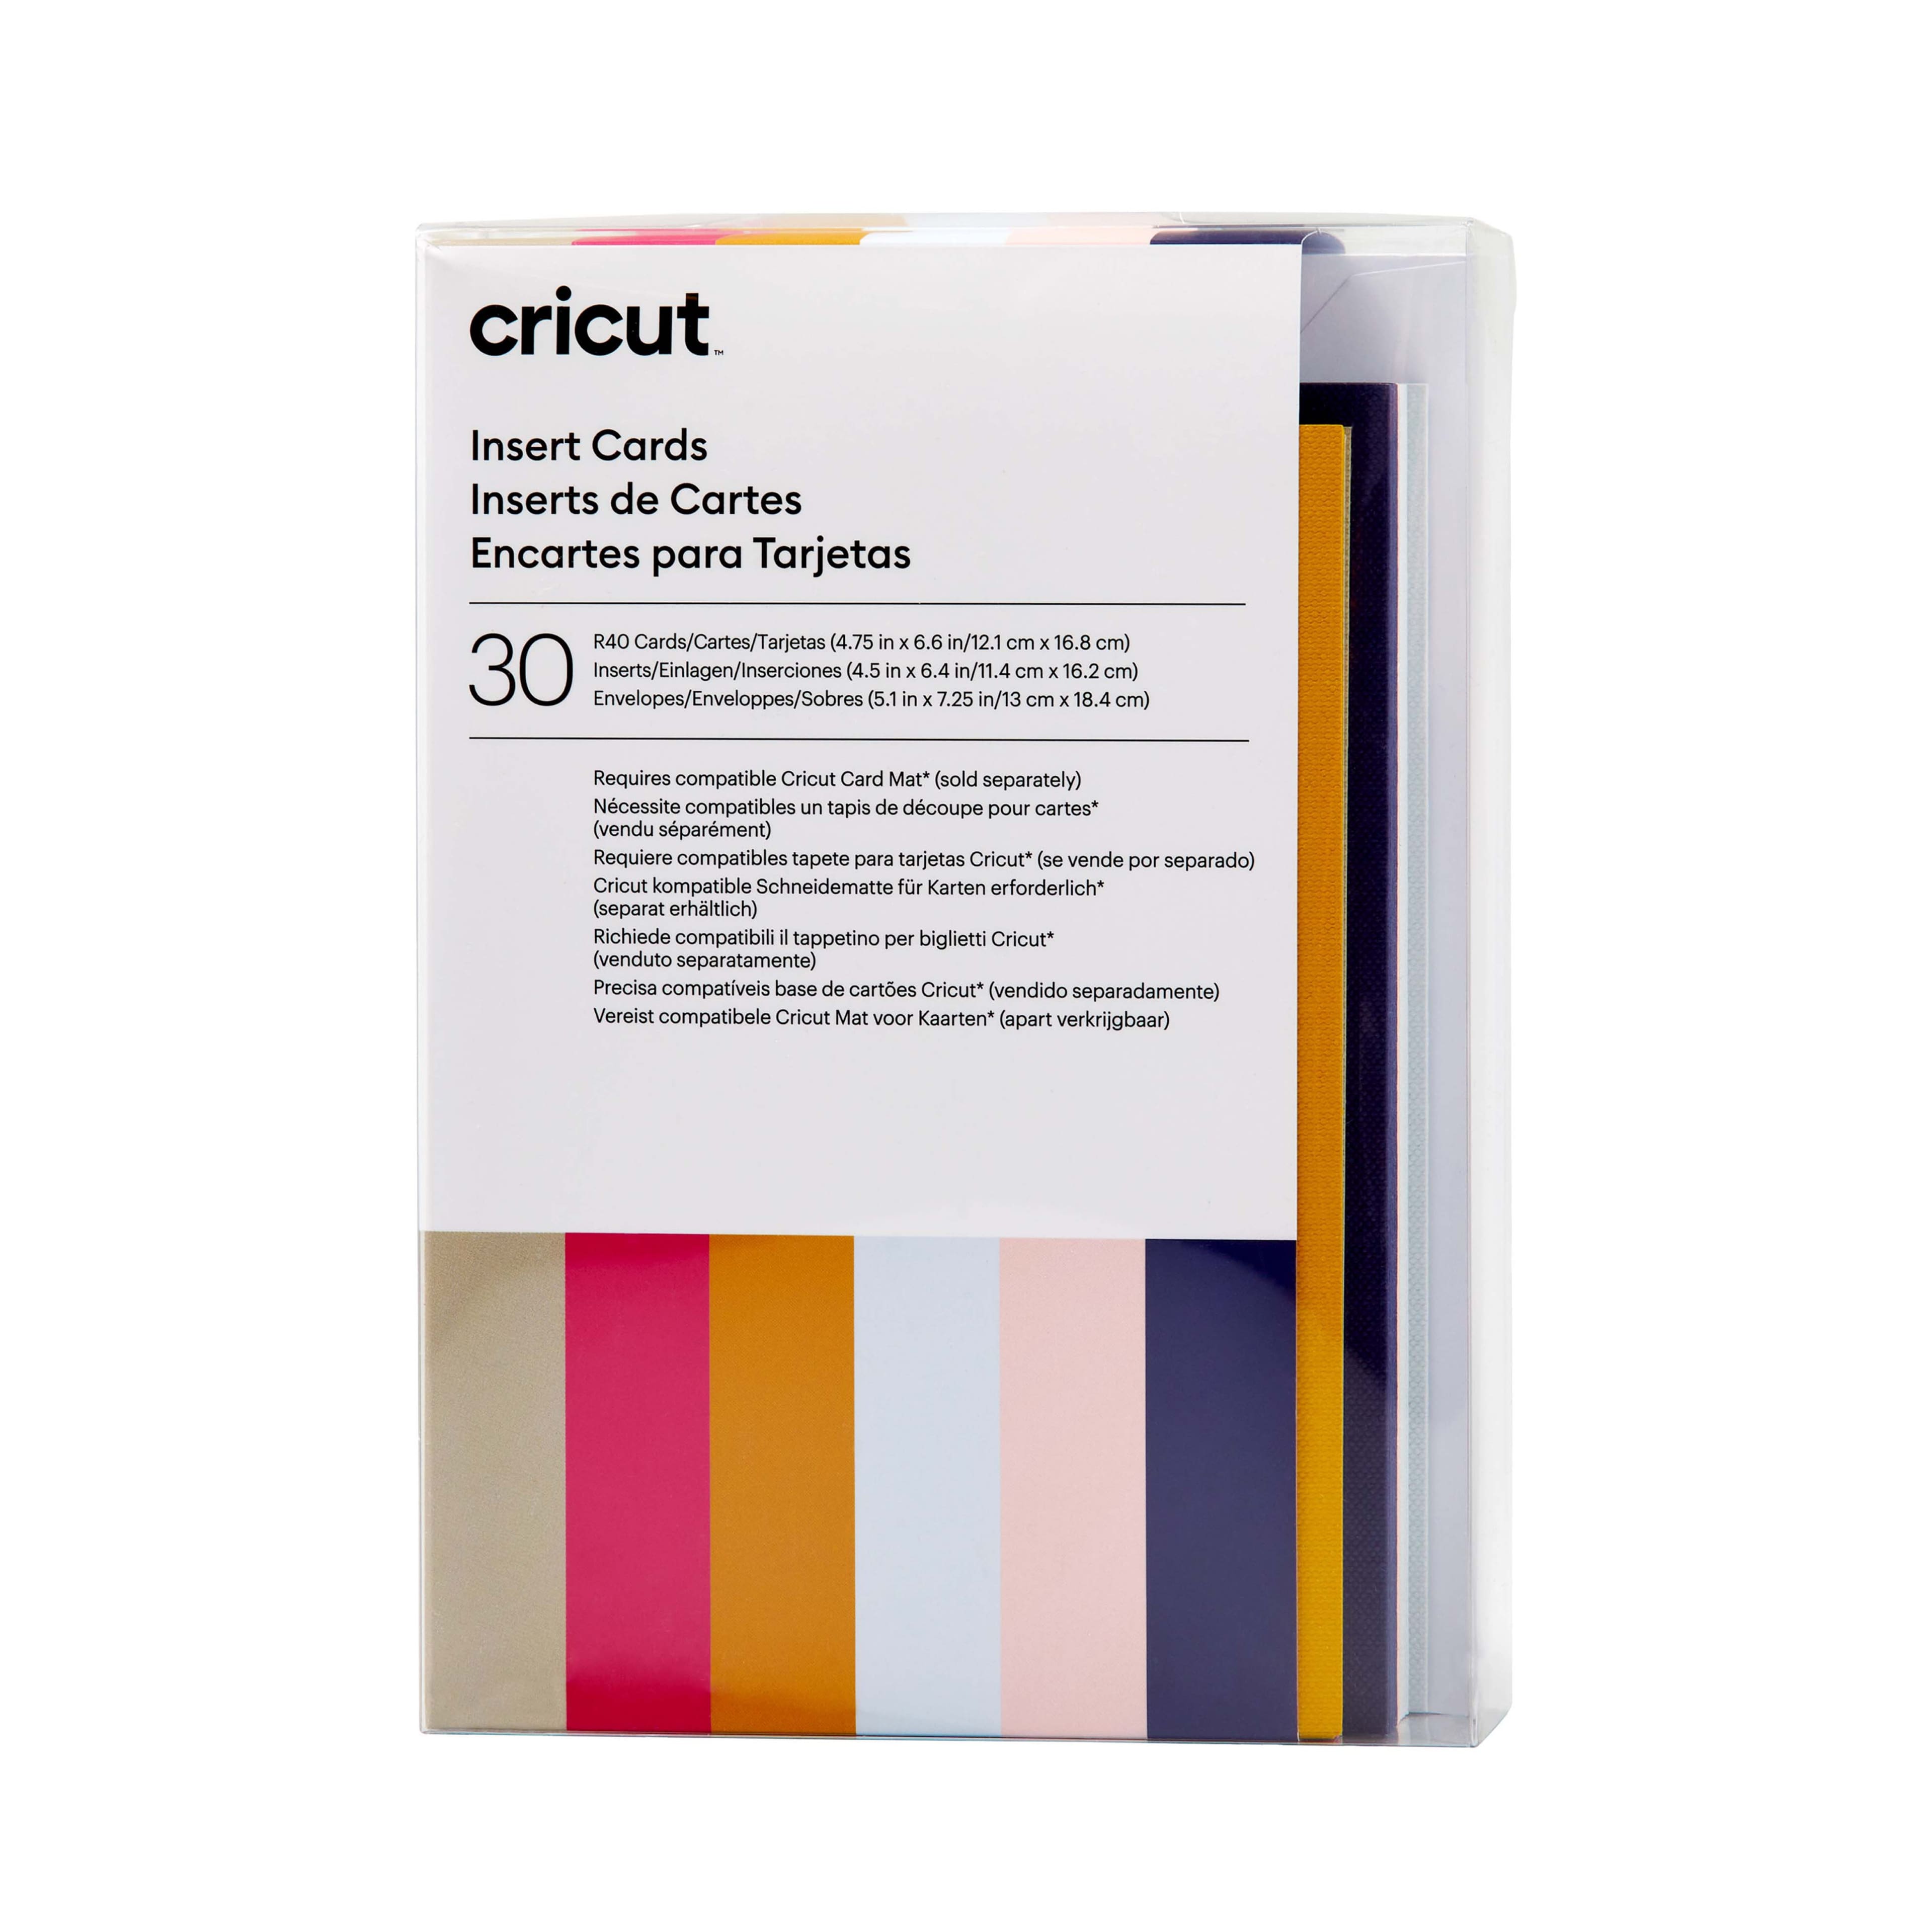 Cricut™ R40 Watercolor Cards & Envelopes, 10ct.